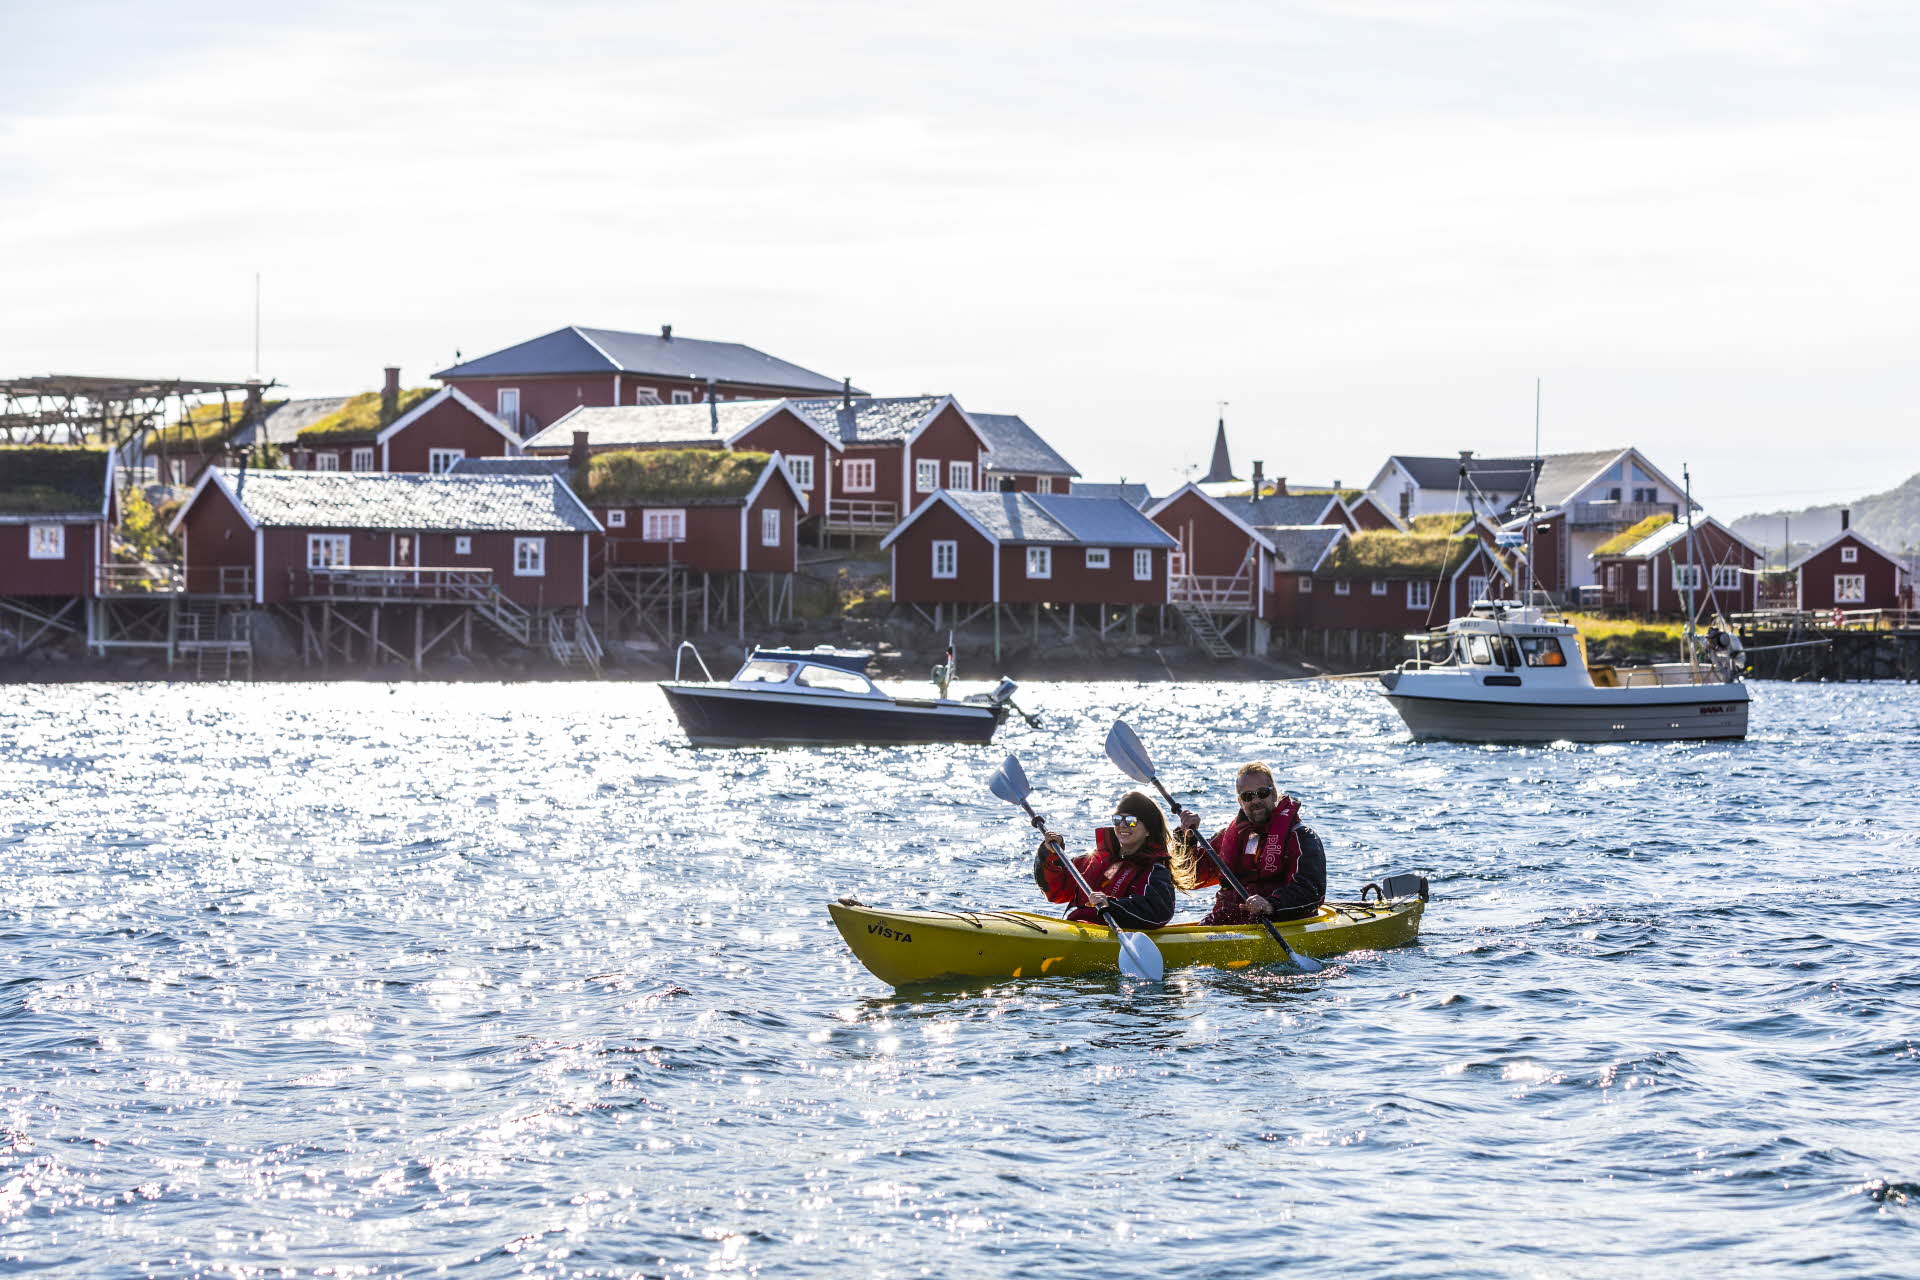 Deux personnes en kayak, devant deux petits bateaux et le Reine Rorbuer